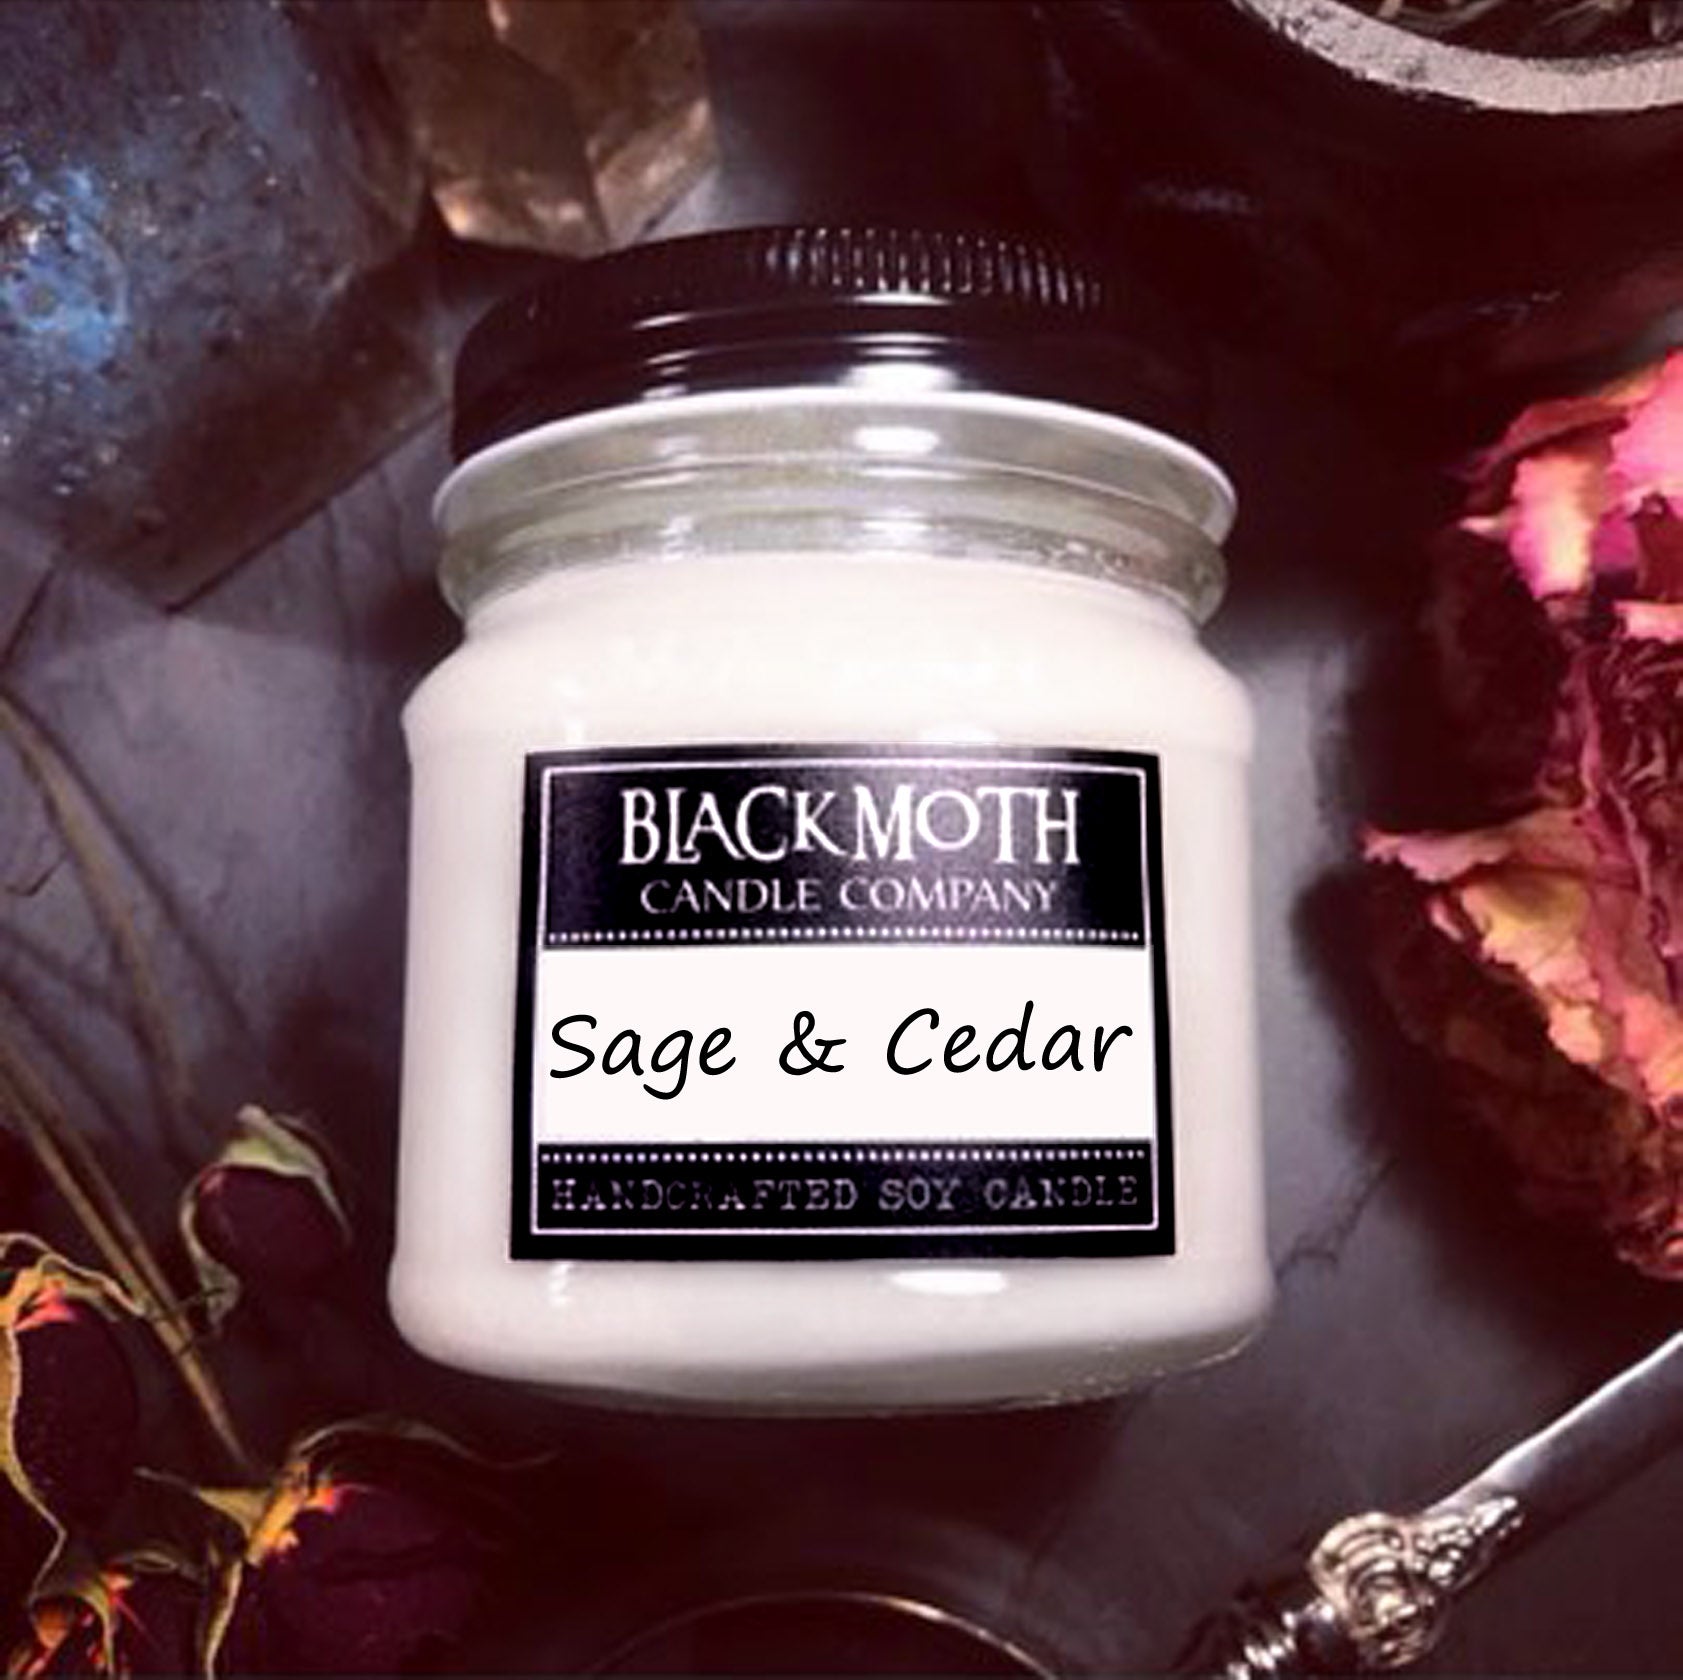 8 oz Sage & Cedar Scented Soy Candle in Mason Jar